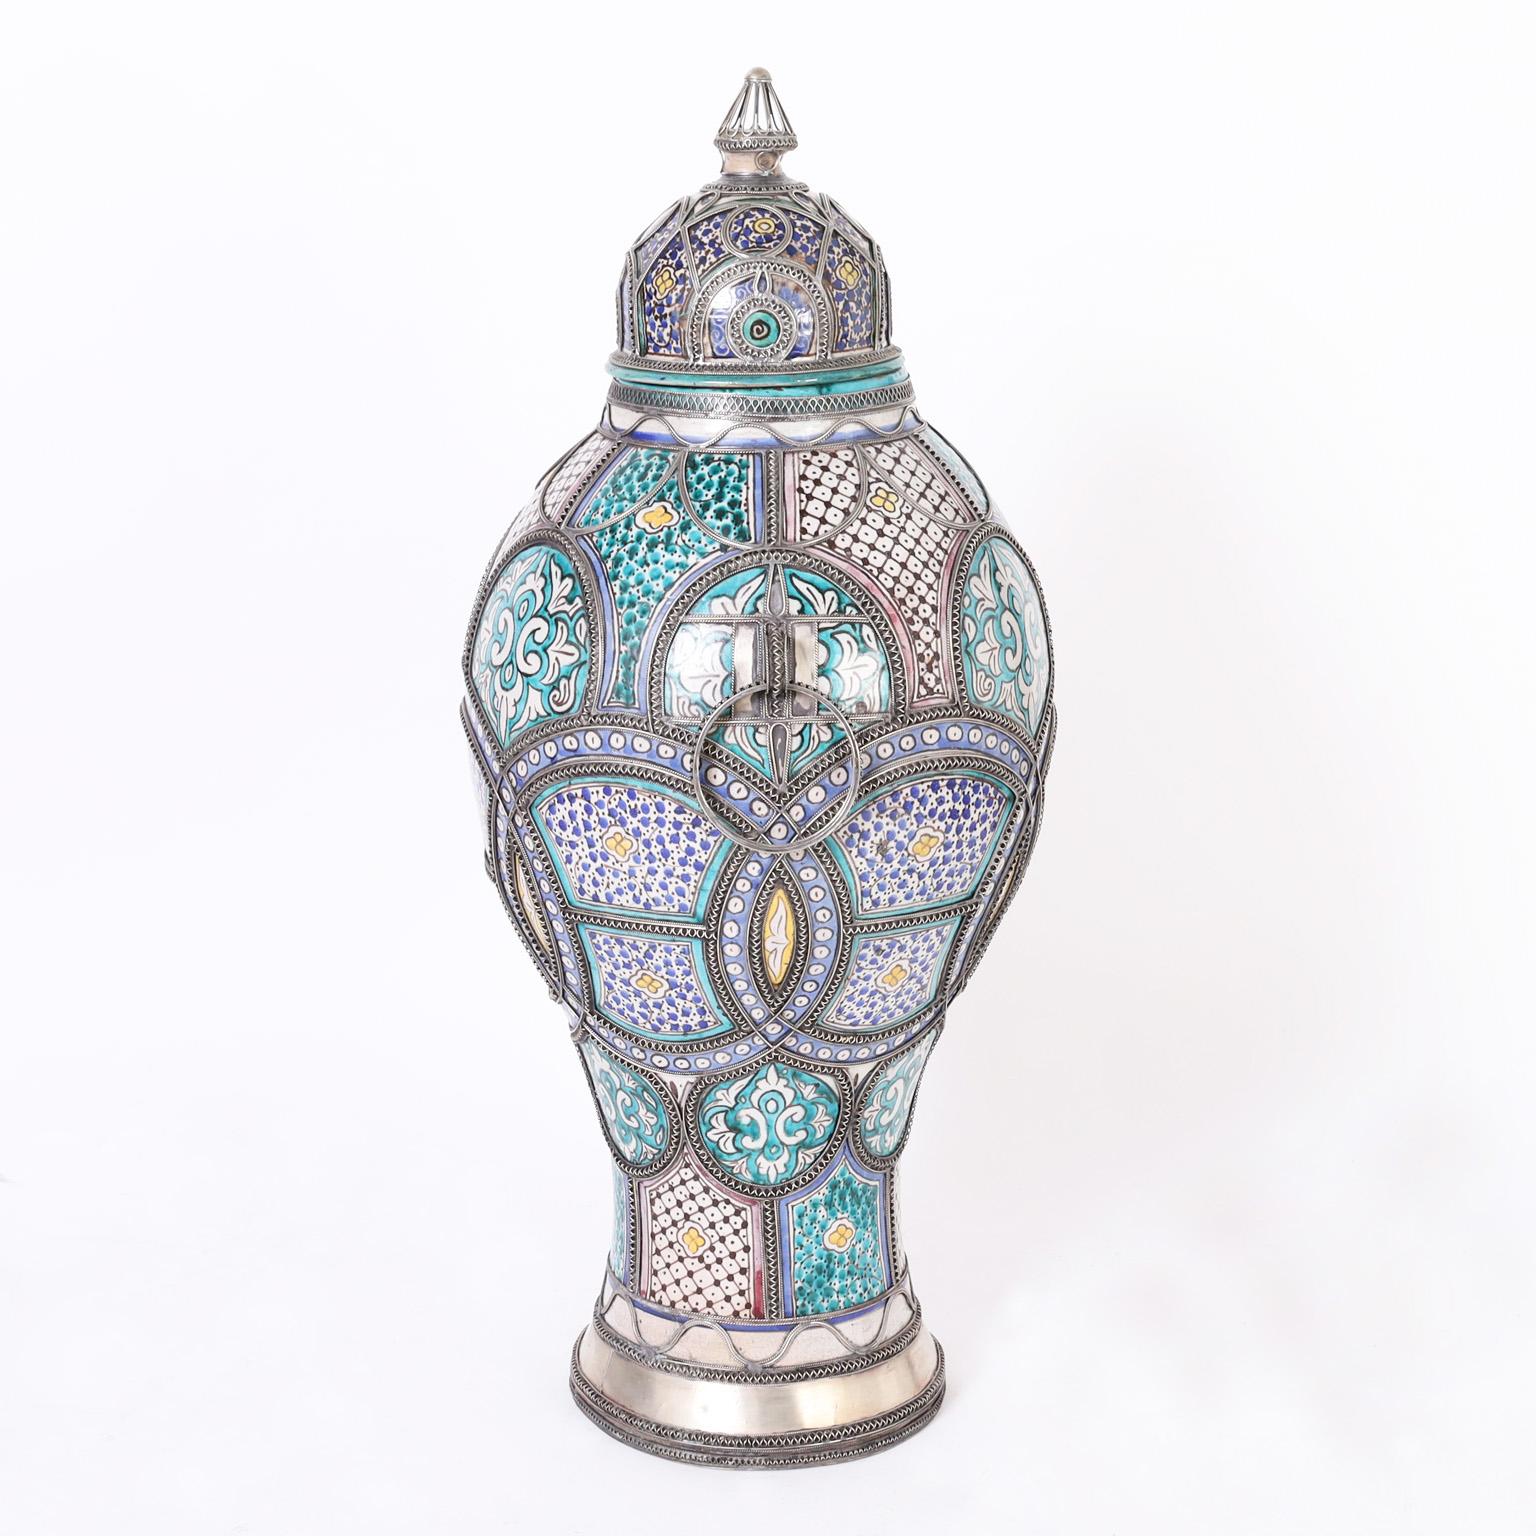 Große und beeindruckende marokkanische Urne mit Deckel aus Terrakotta, glasiert in mediterranen Farben und verziert mit schmuckähnlichen Metallarbeiten, die den 